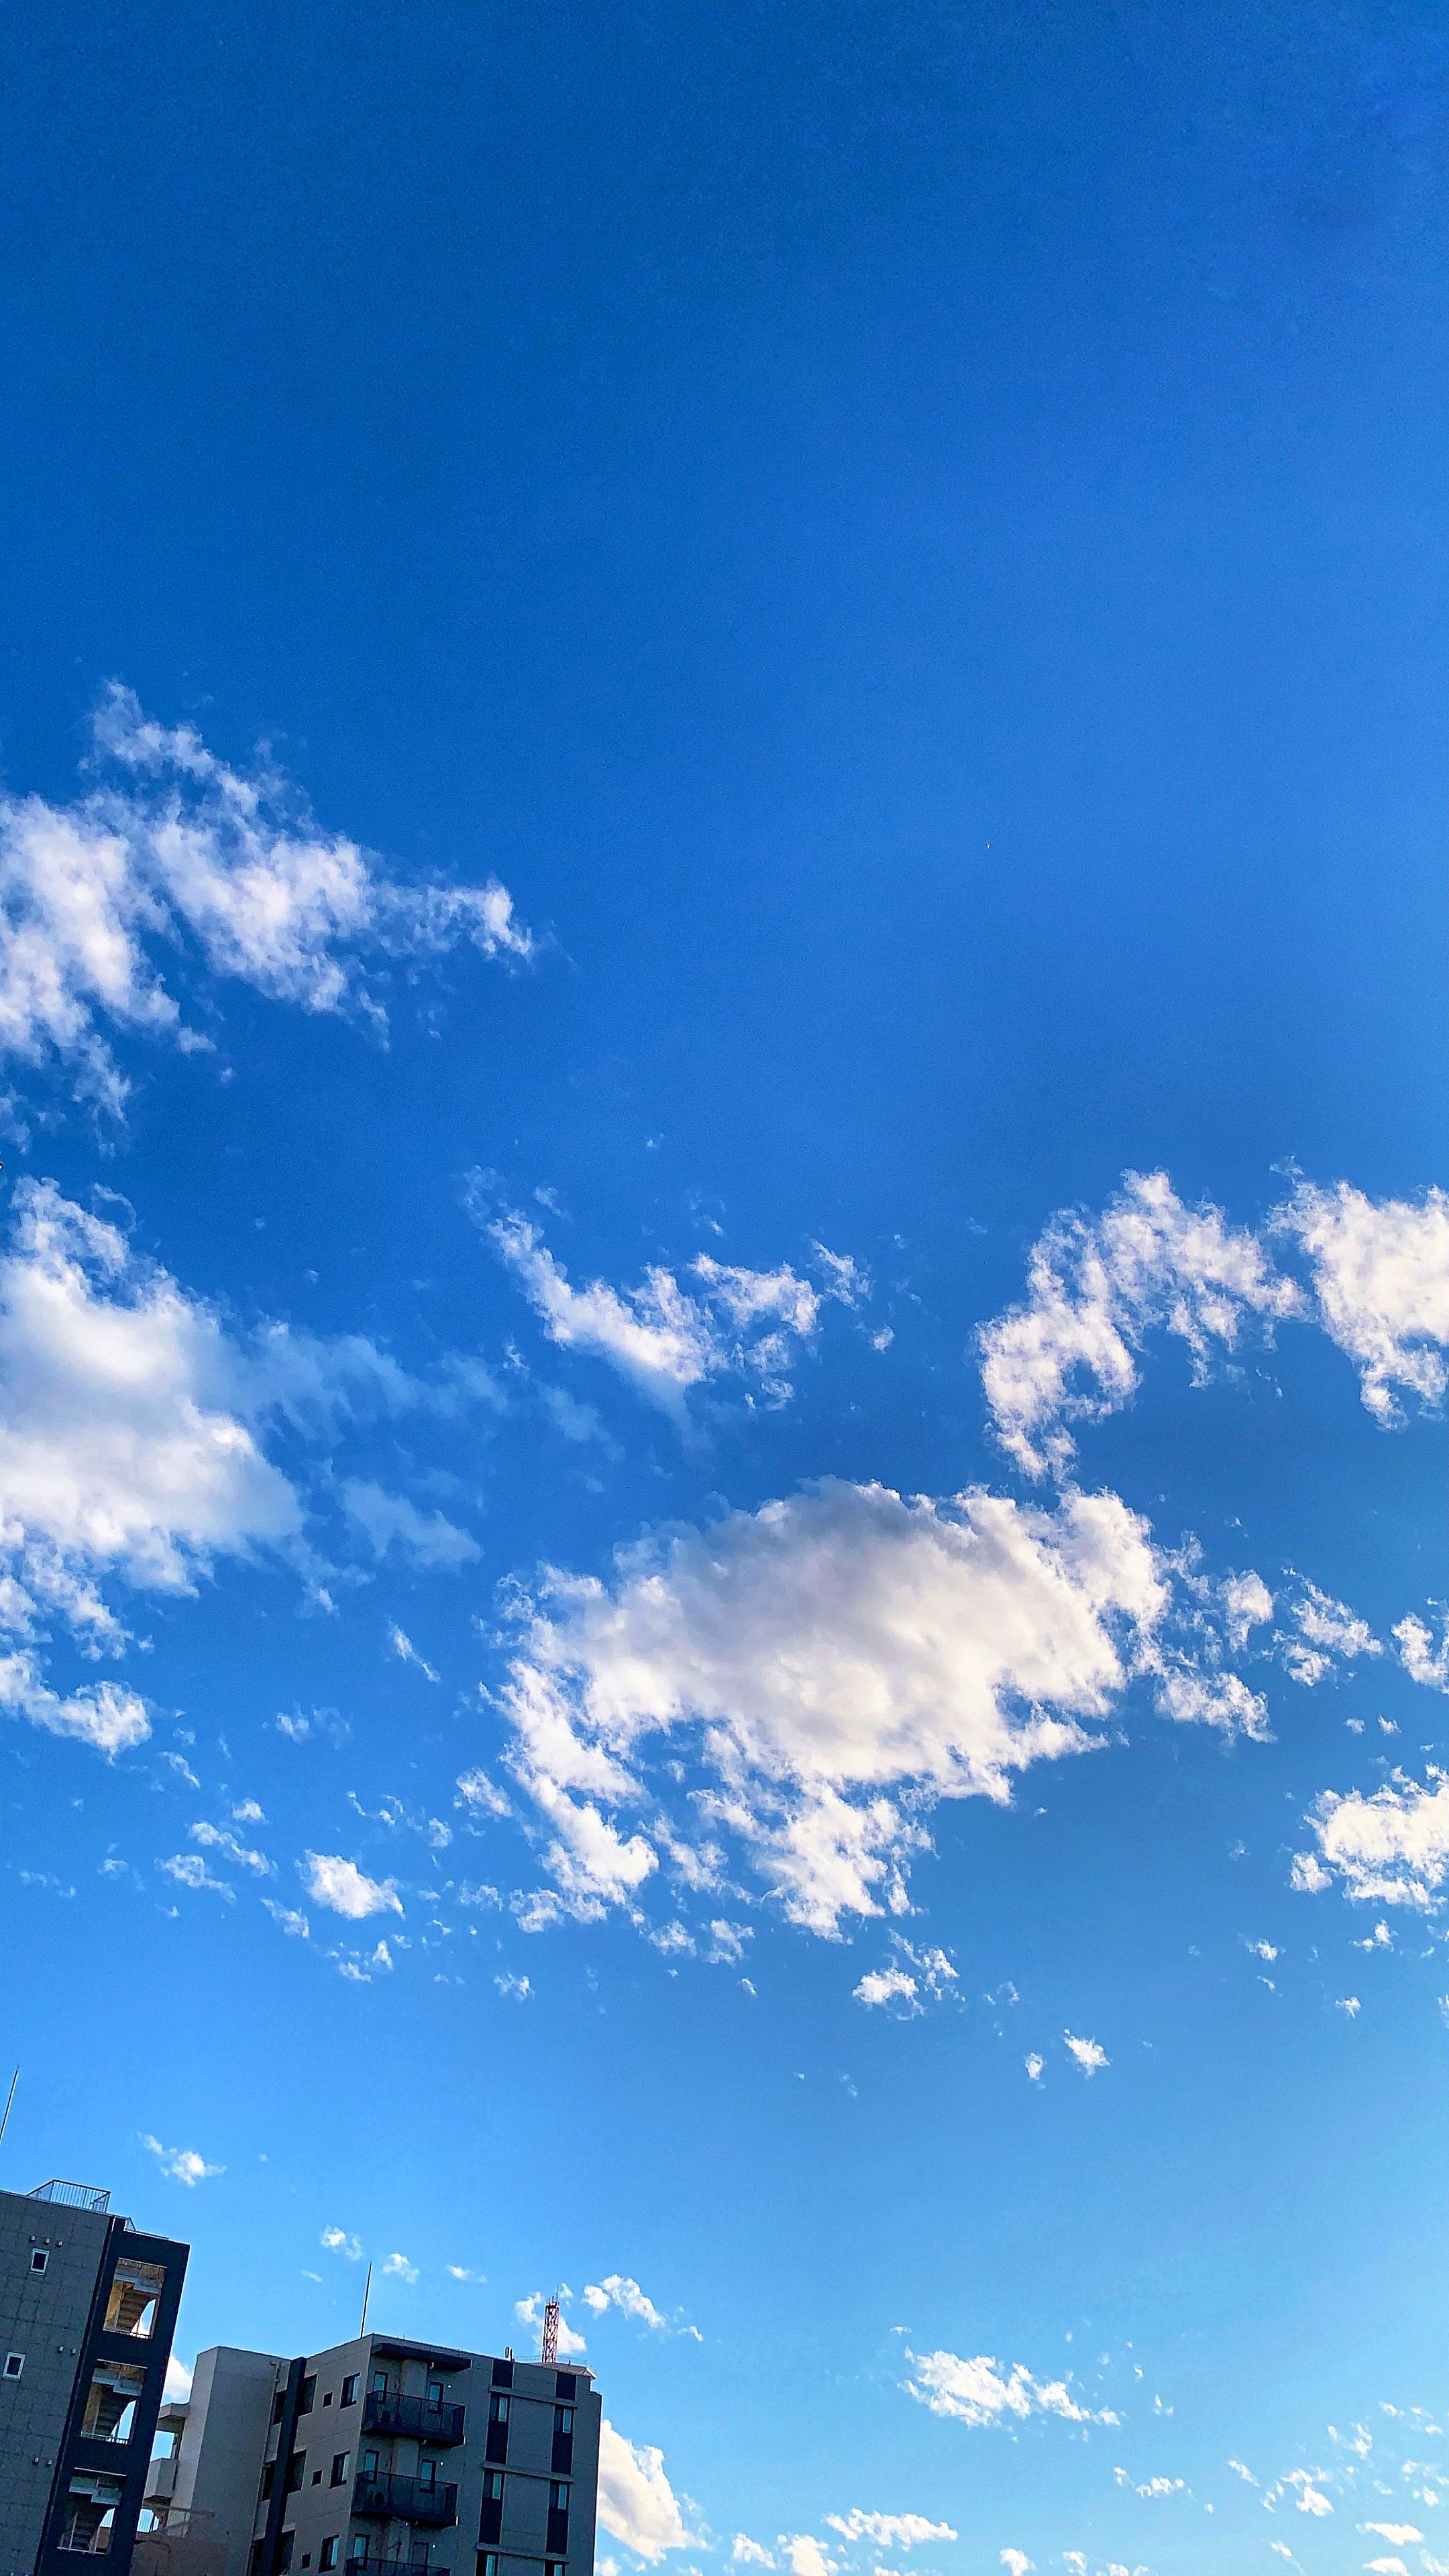 Hình nền bầu trời đẹp trong xanh: Bạn muốn lựa chọn một hình nền mới cho máy tính của mình? Bức ảnh này là lựa chọn hoàn hảo với màu xanh đặc trưng của bầu trời kết hợp với ánh nắng và đám mây mơ màng. Bạn sẽ phải ngỡ ngàng trước sự độc đáo của bức ảnh này.